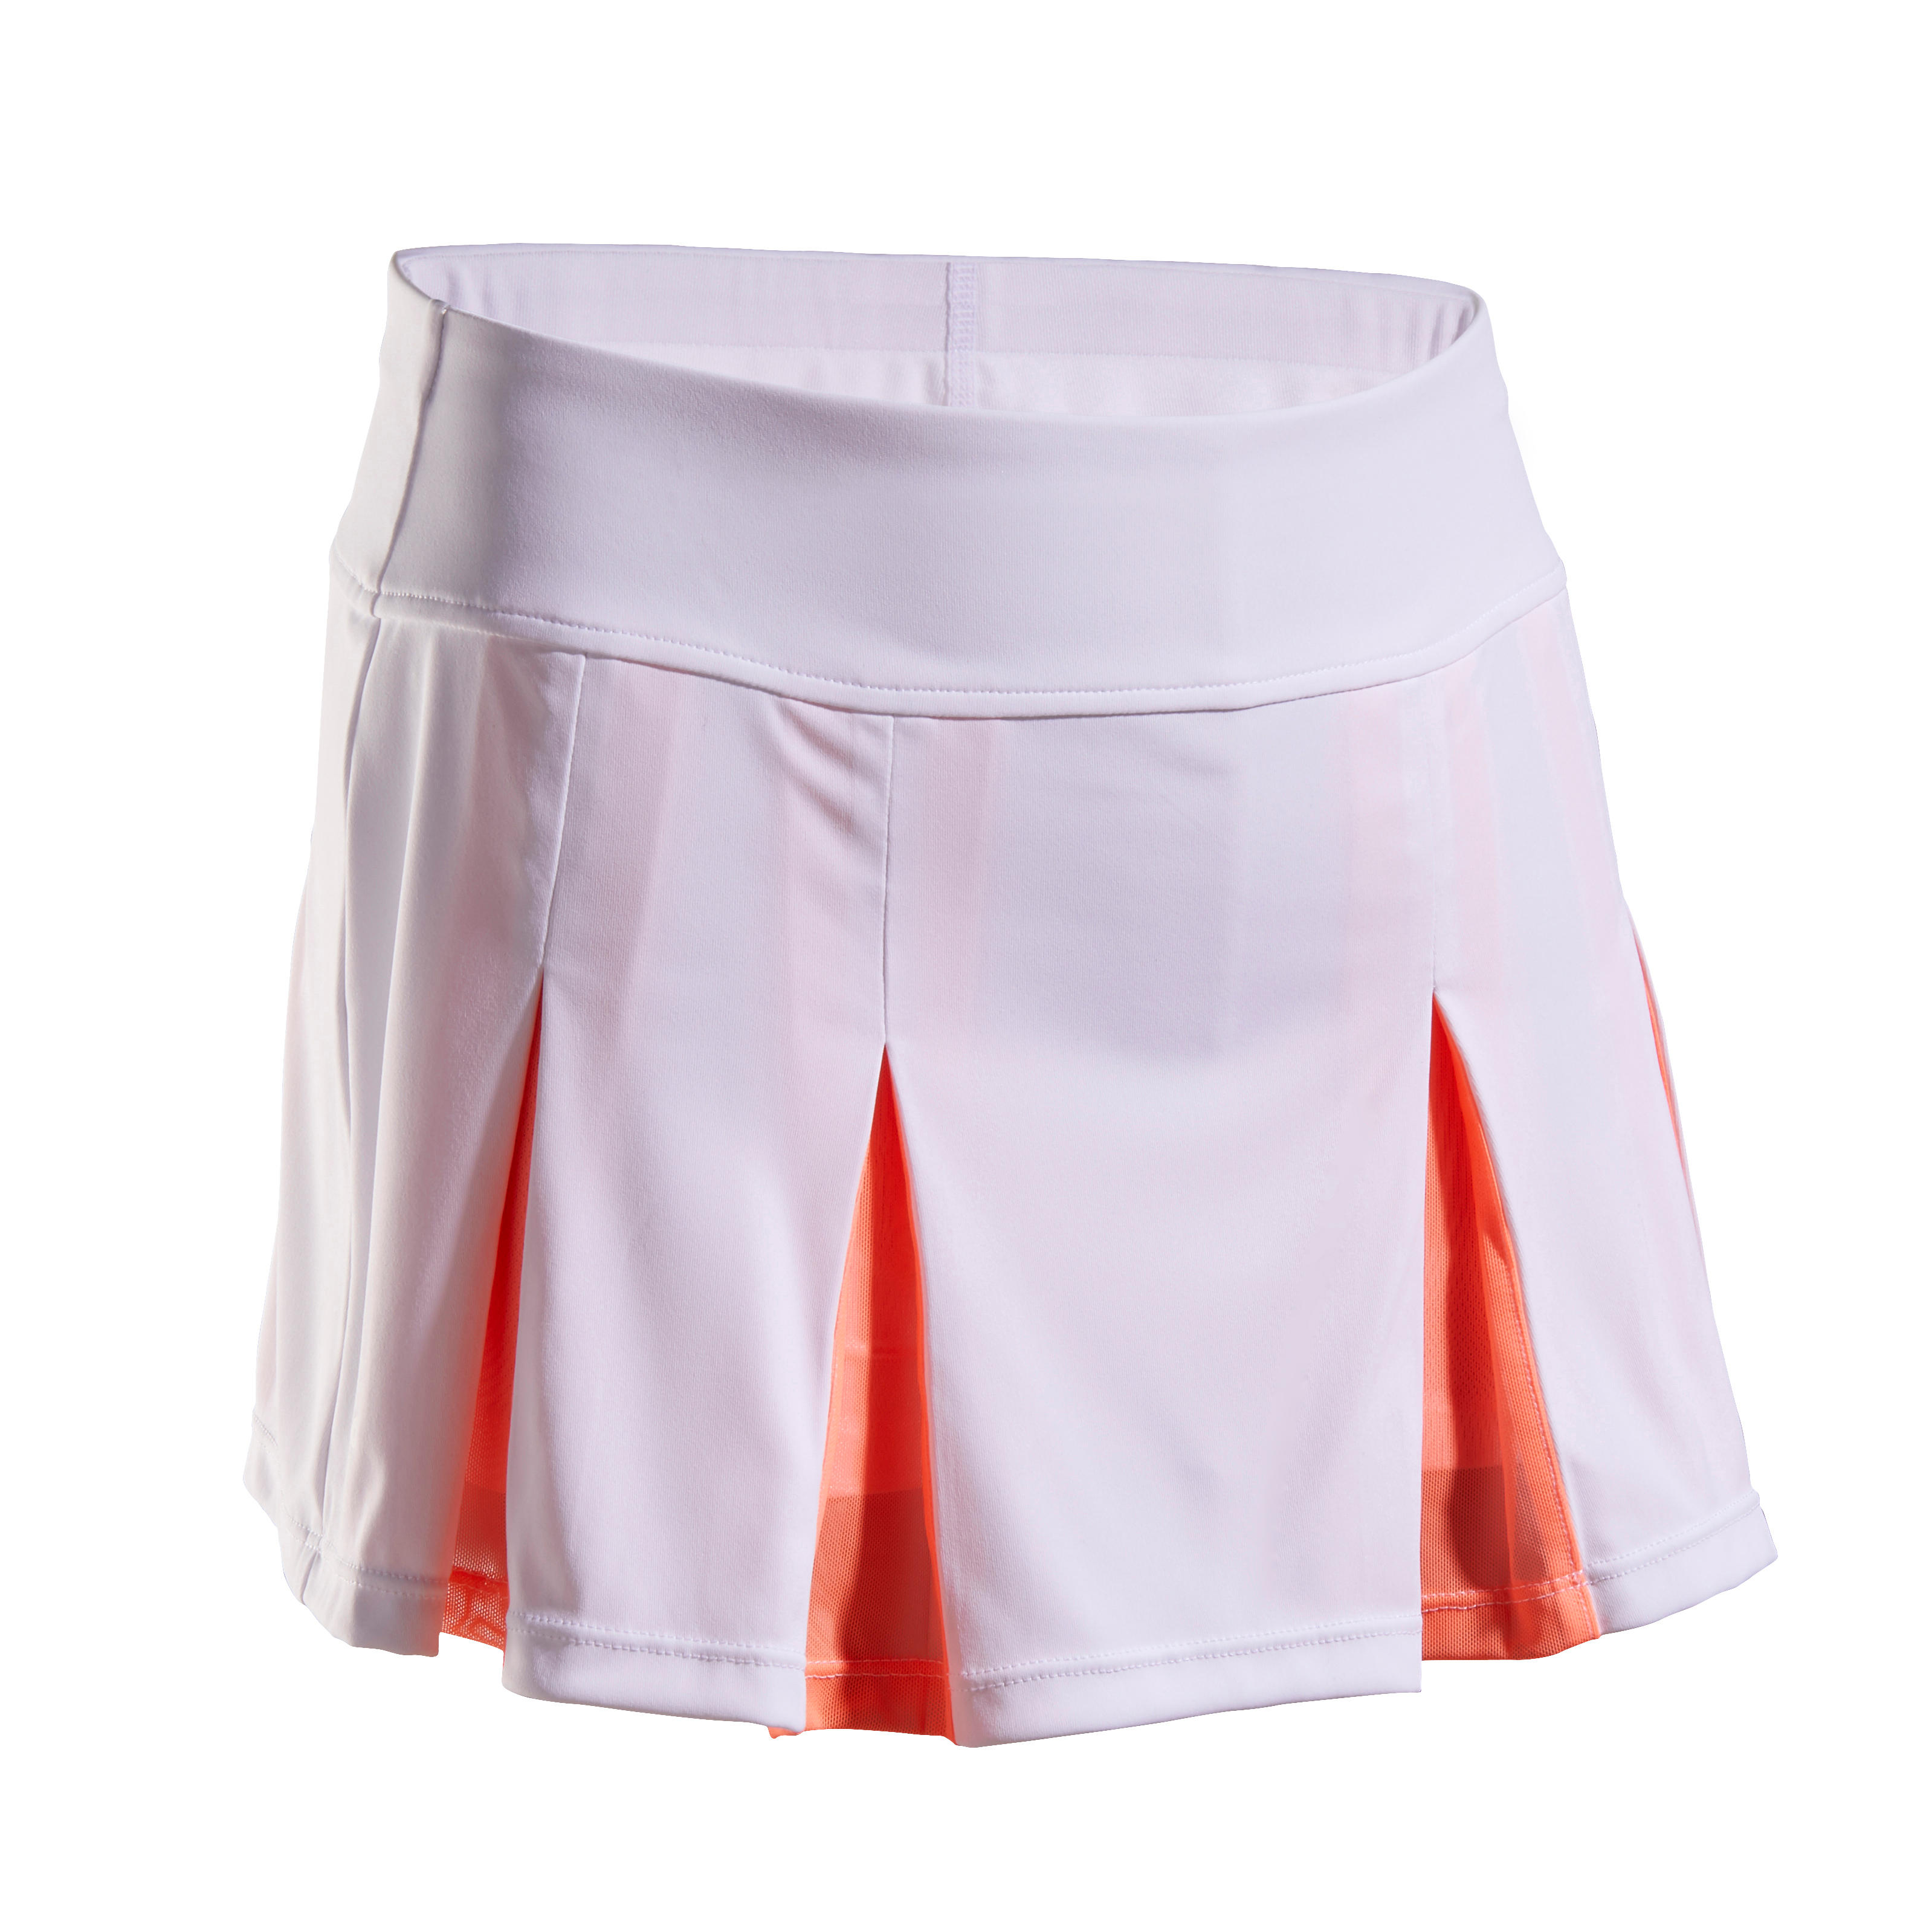 Comprar Faldas deportivas para niñas de 5 a 14 años online| Decathlon